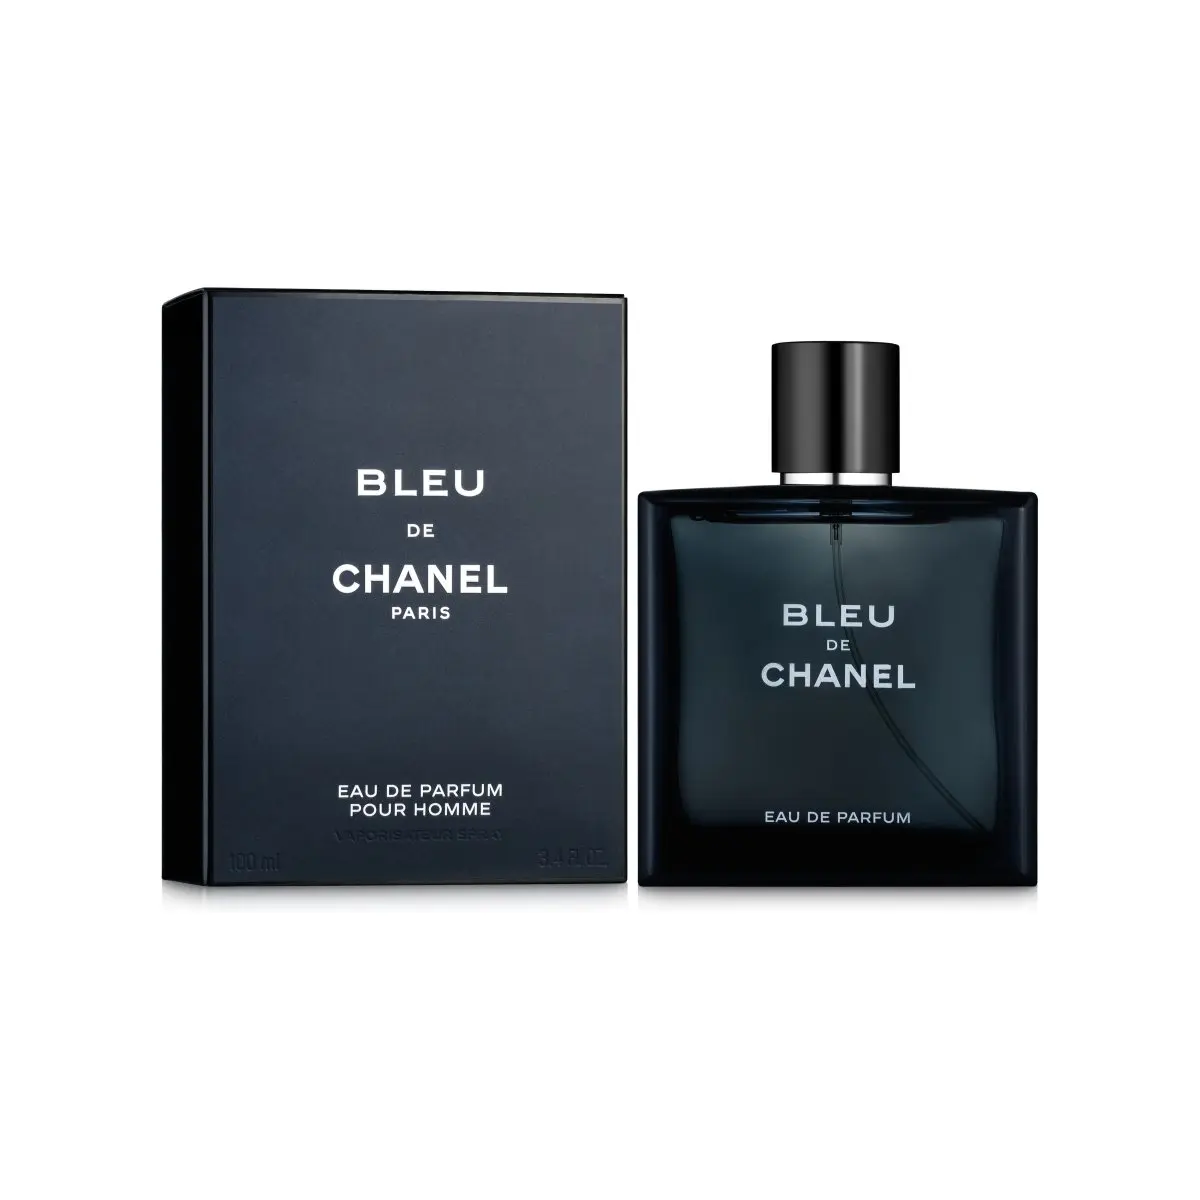 Chanel bleu de chanel - купить недорого